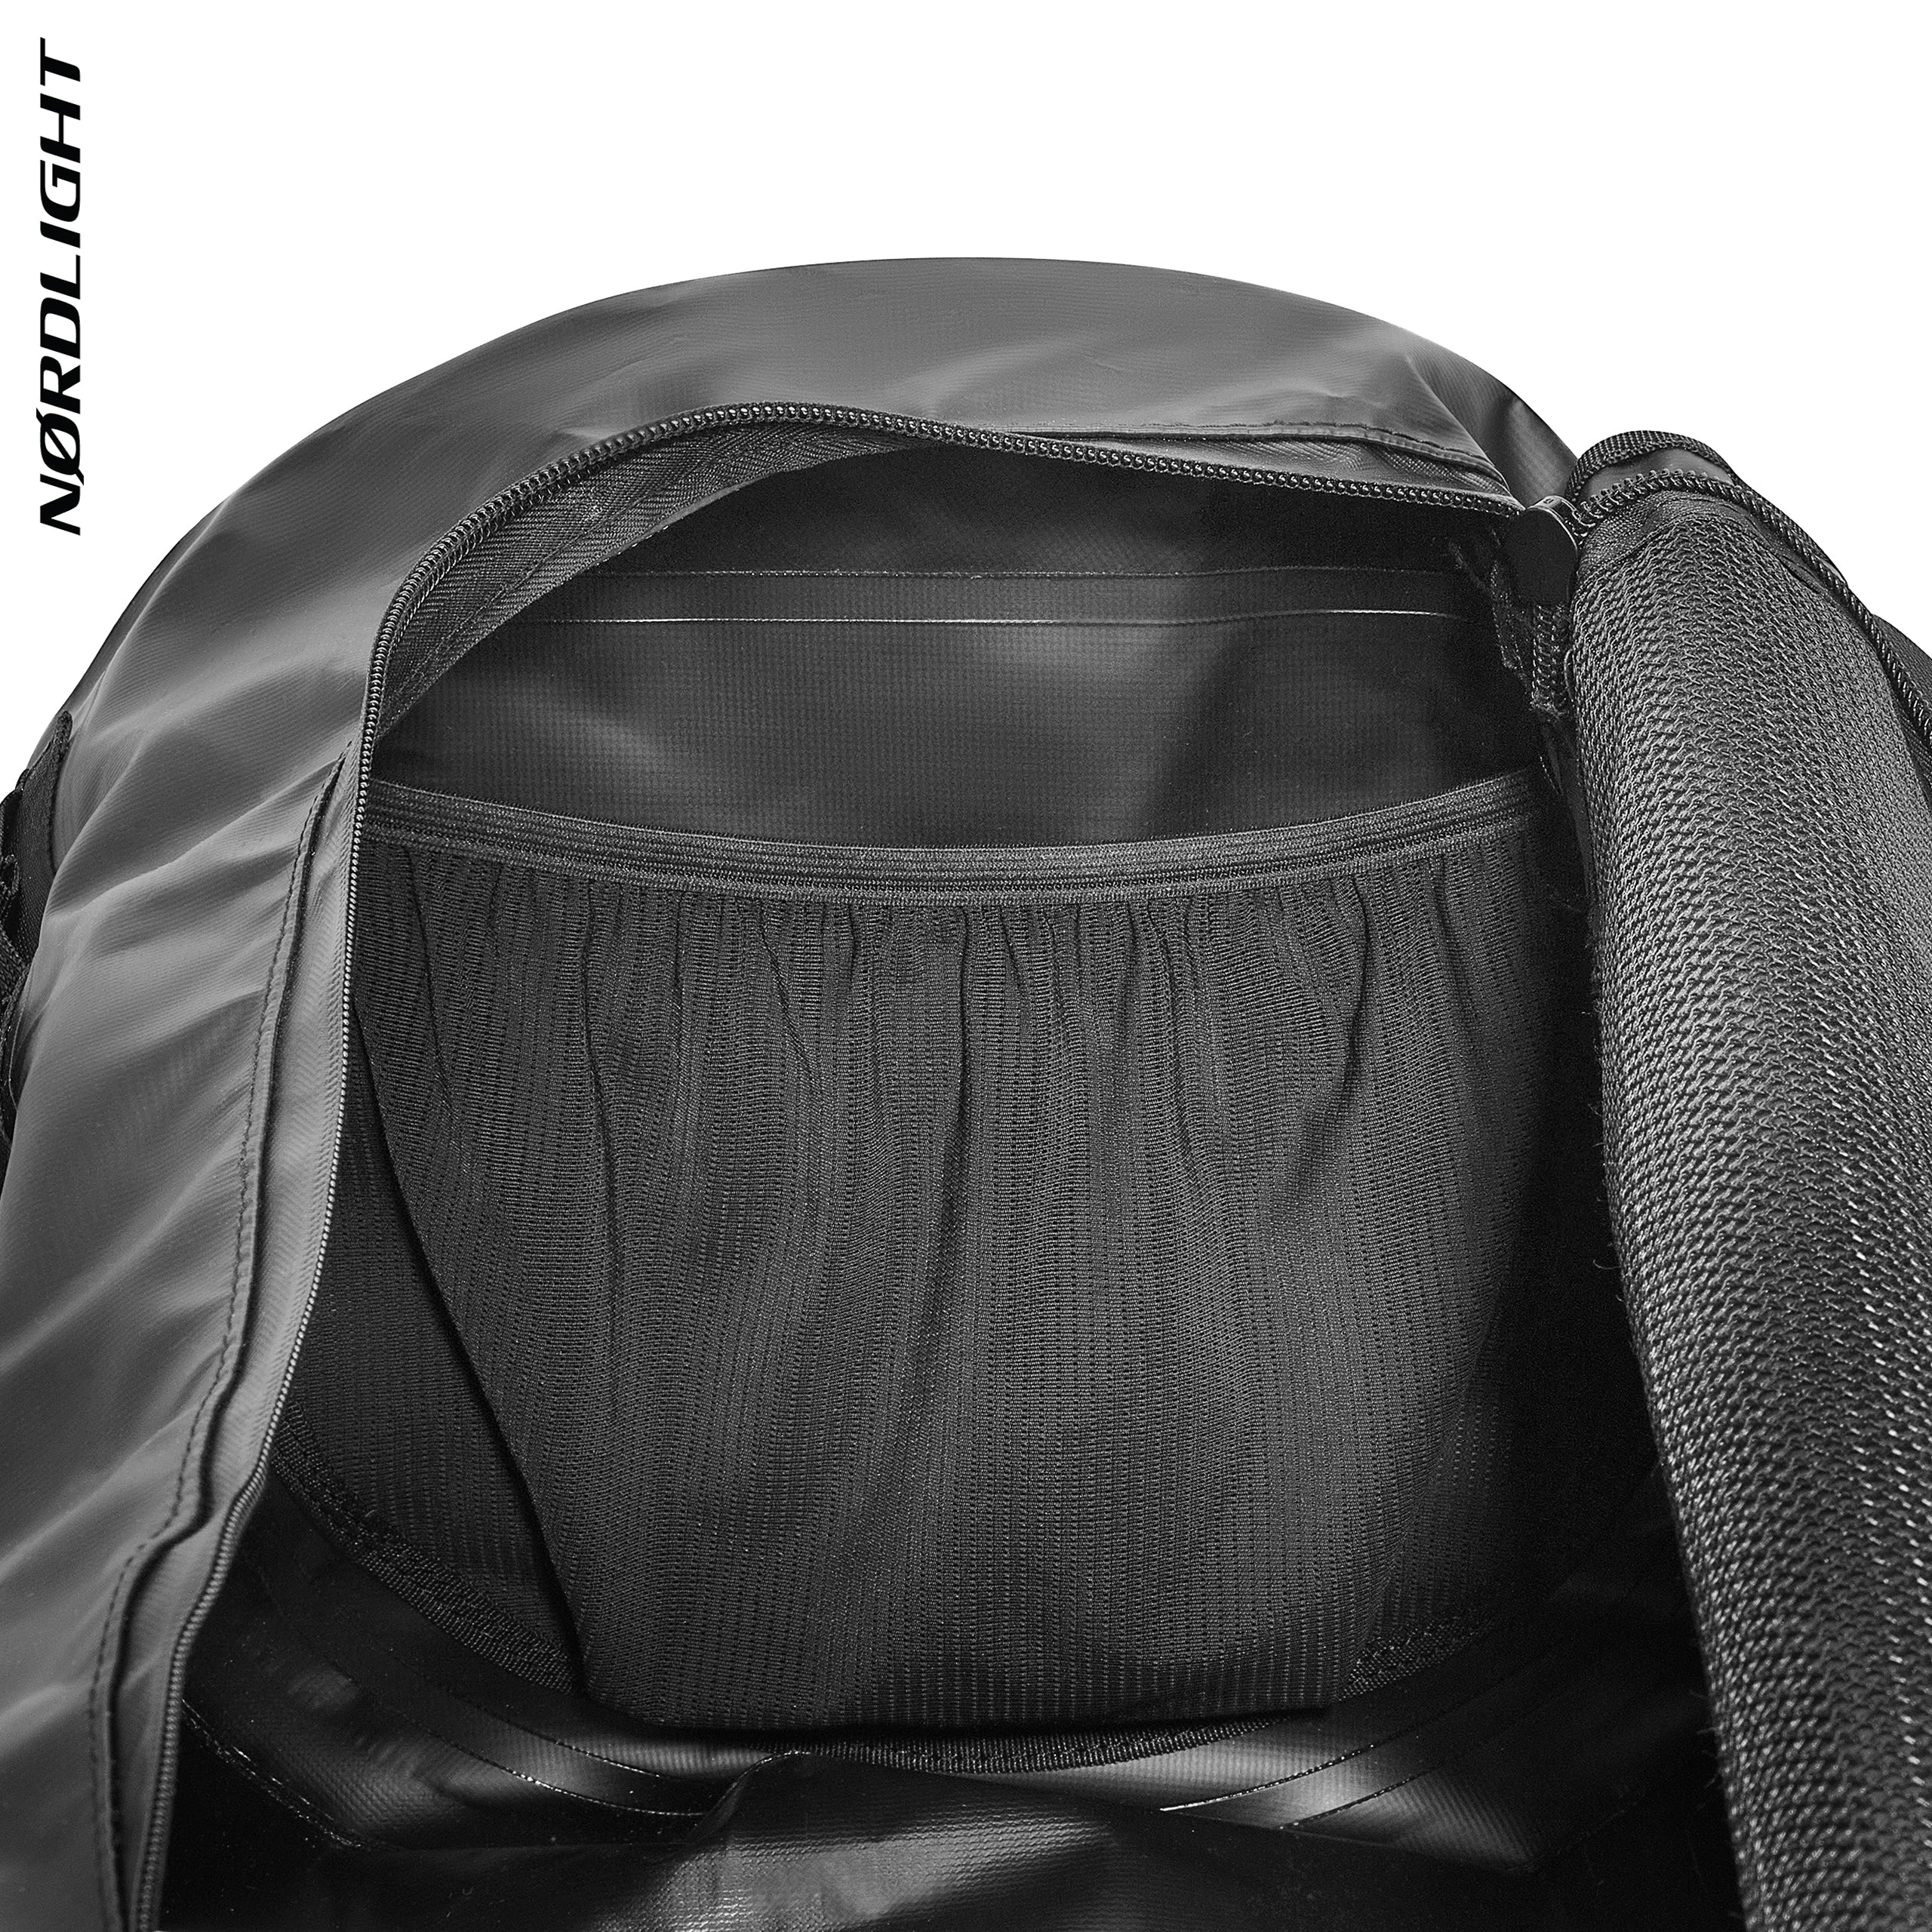 Nordlight | Duffle Bag 60L